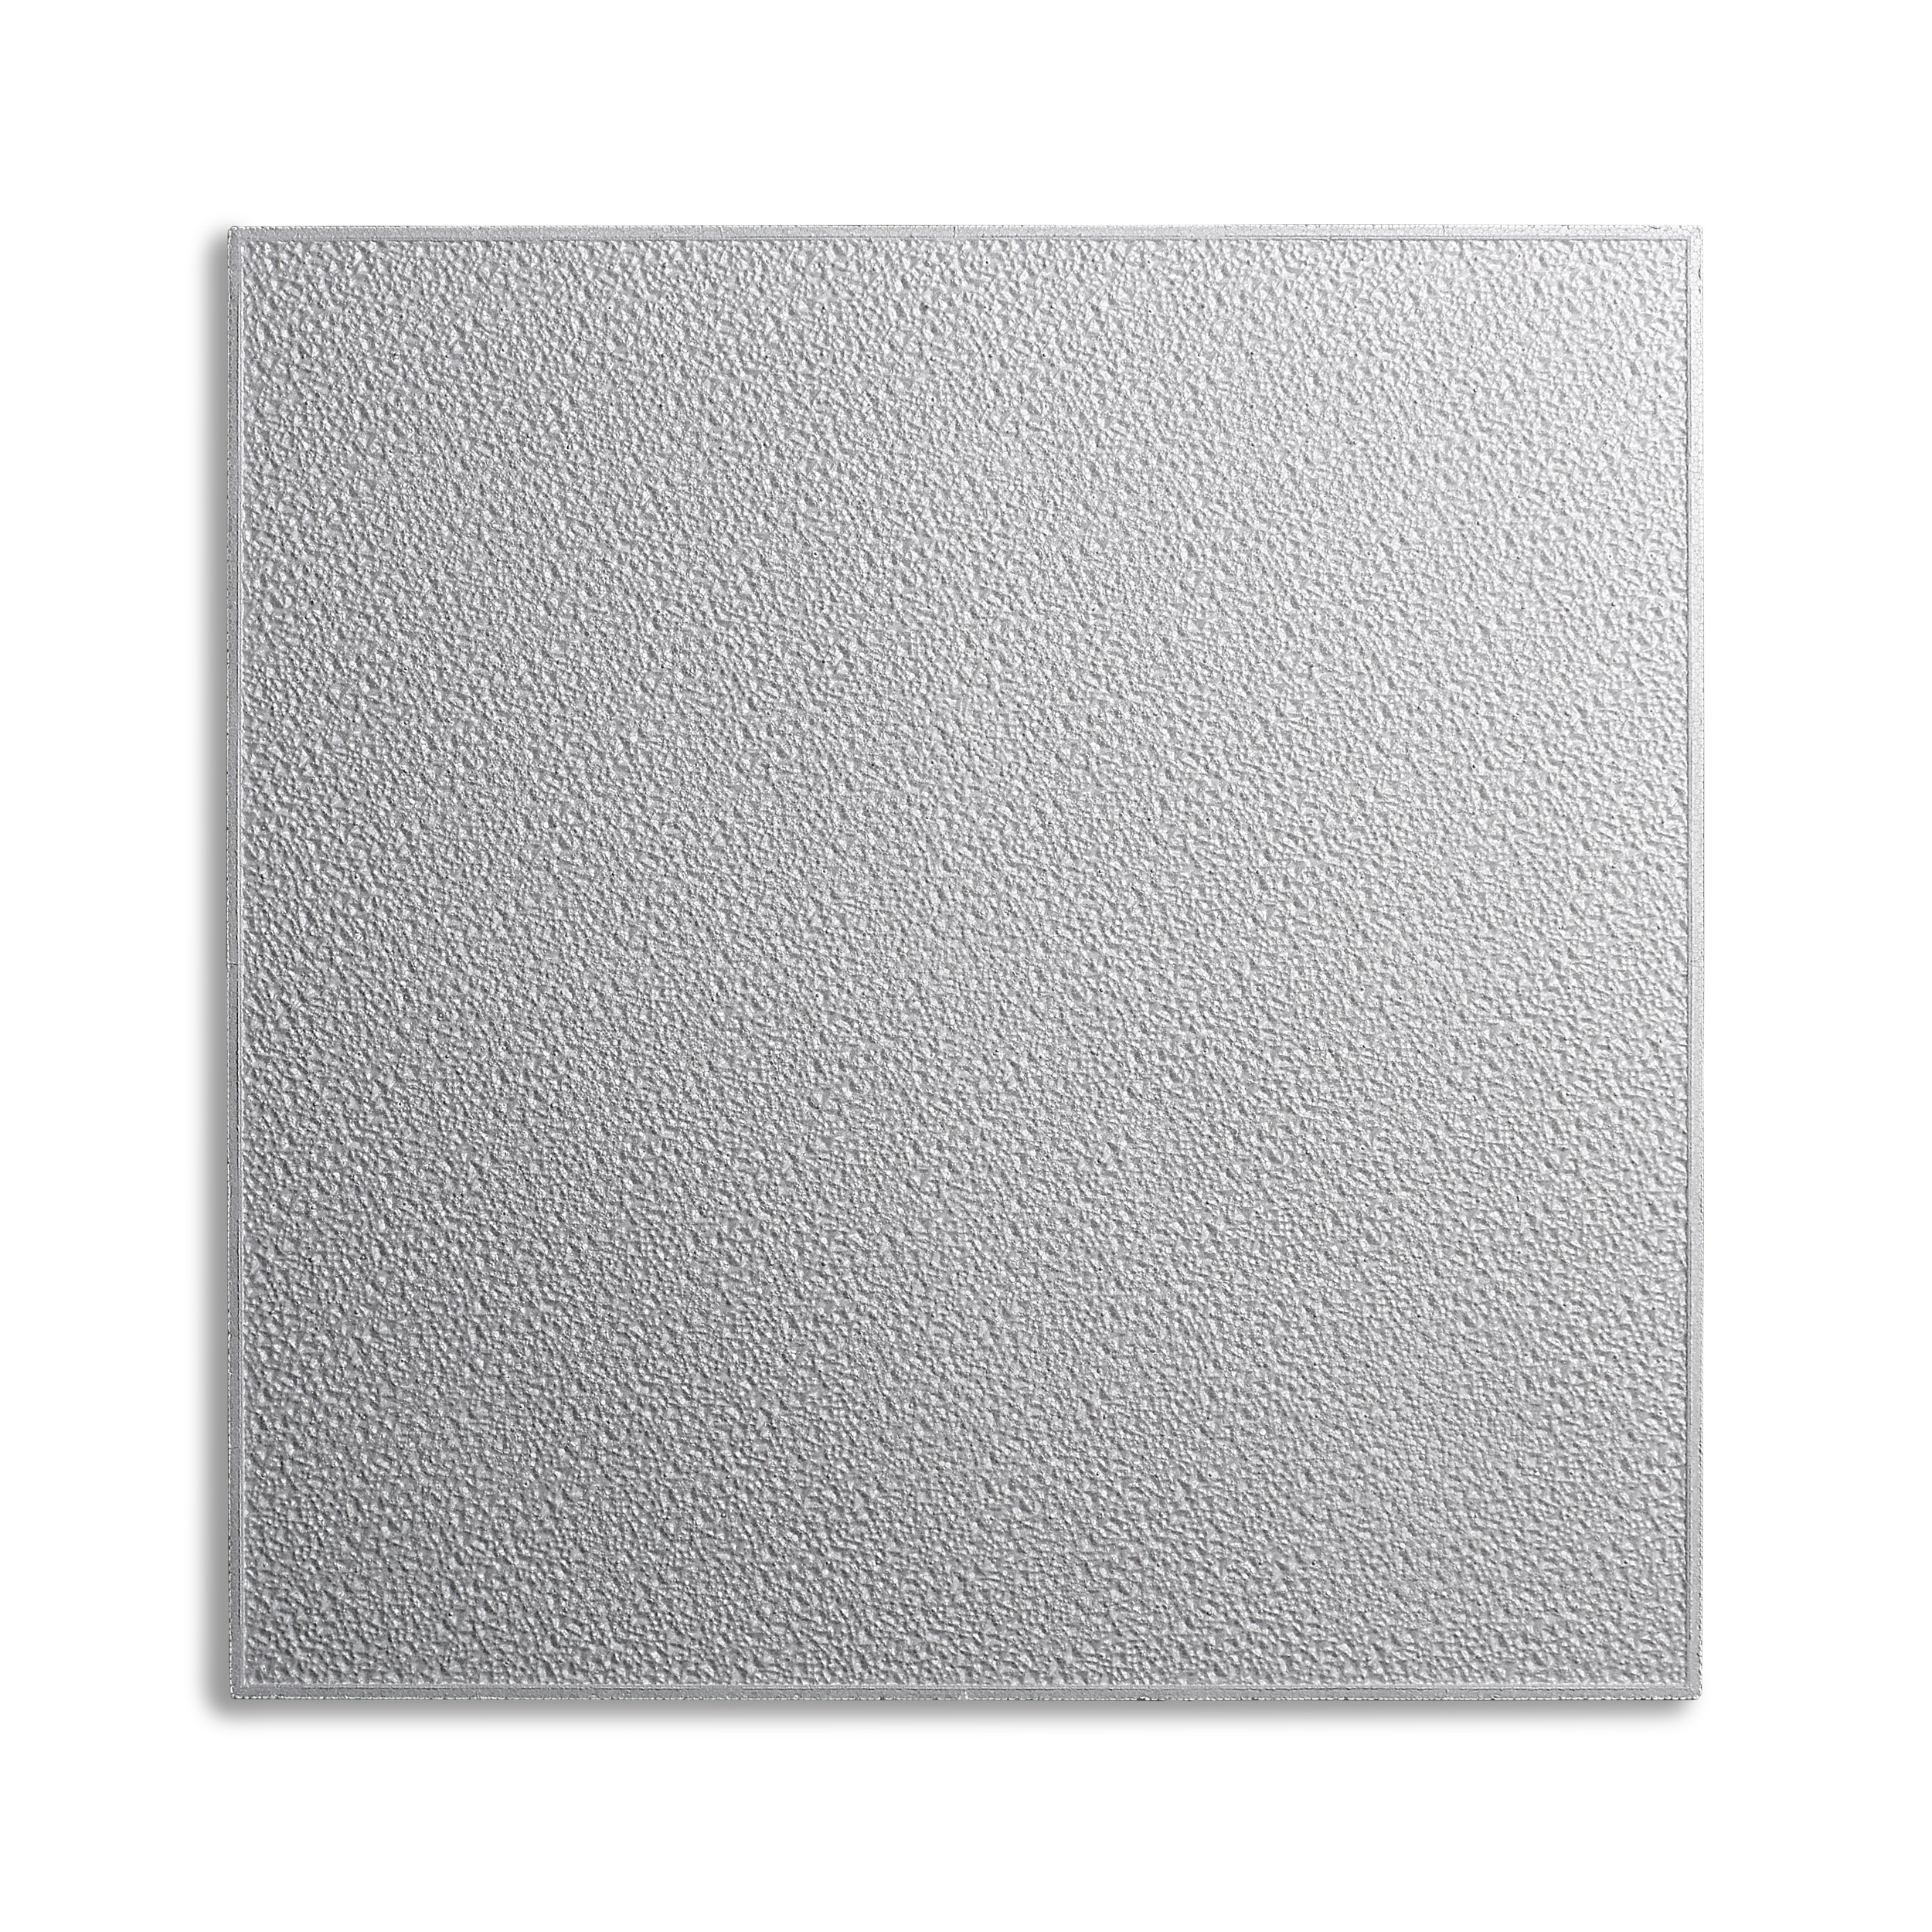 Decosa Deckenplatte Turin, weiß, 50 x 50 cm